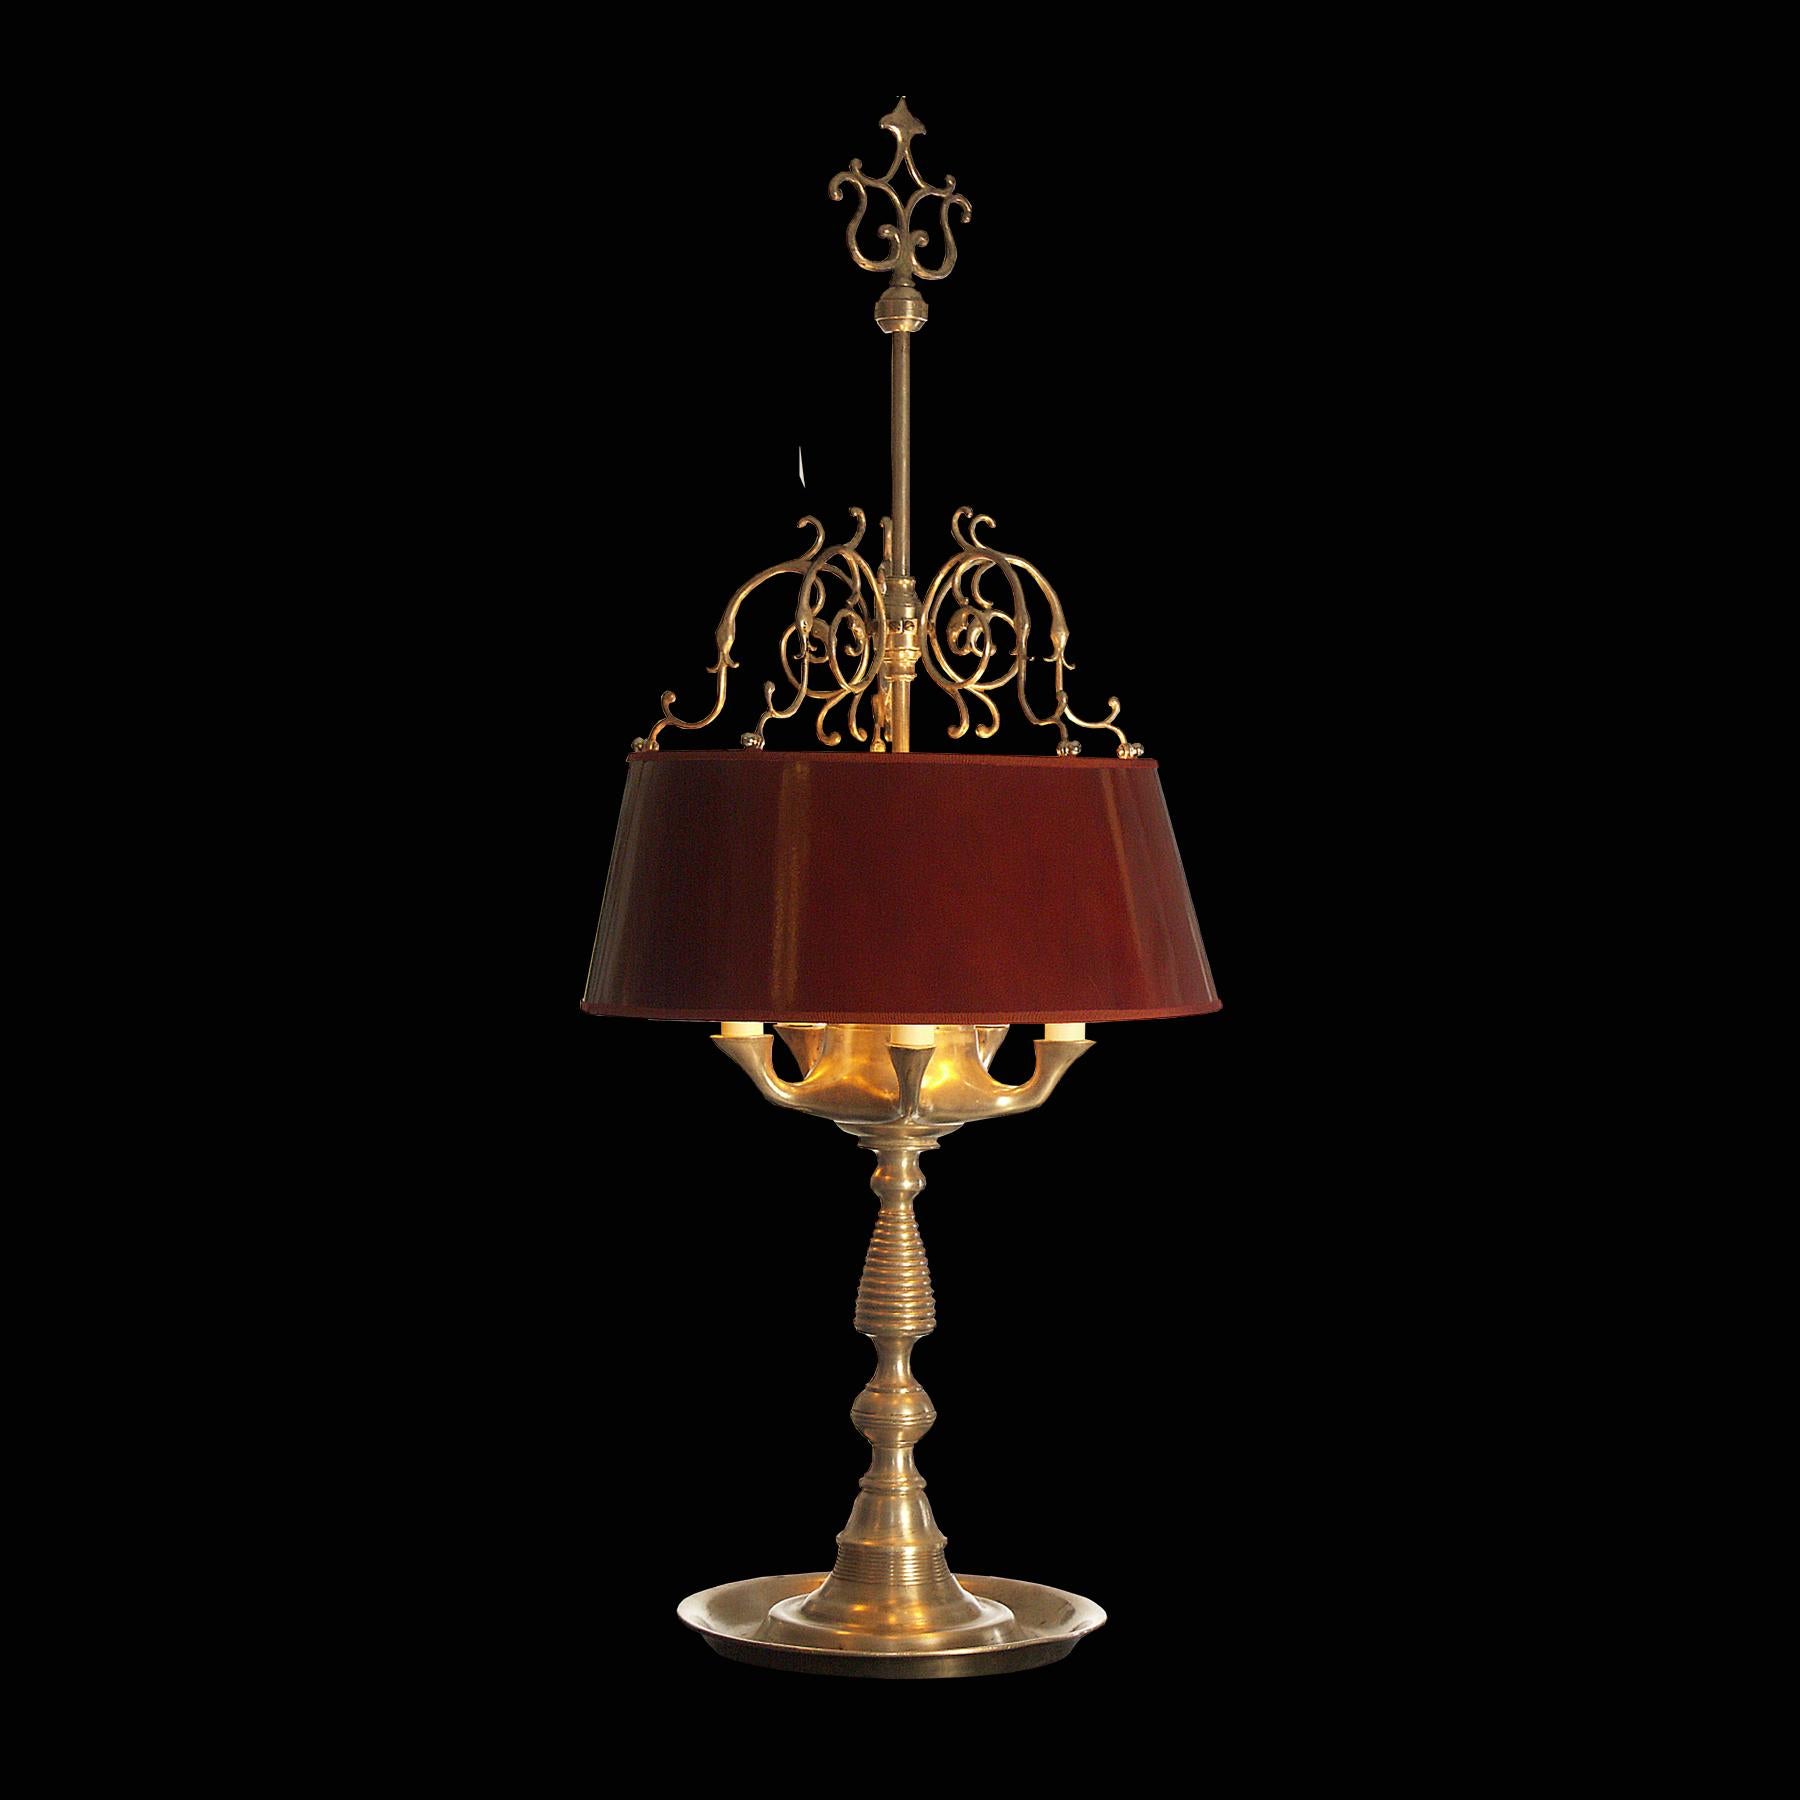 Tischlampe im Stil einer antiken Öllampe 
Verwendetes Material: versilbertes Messing, lackierter Metallschirm
Geeignet für die USA.

